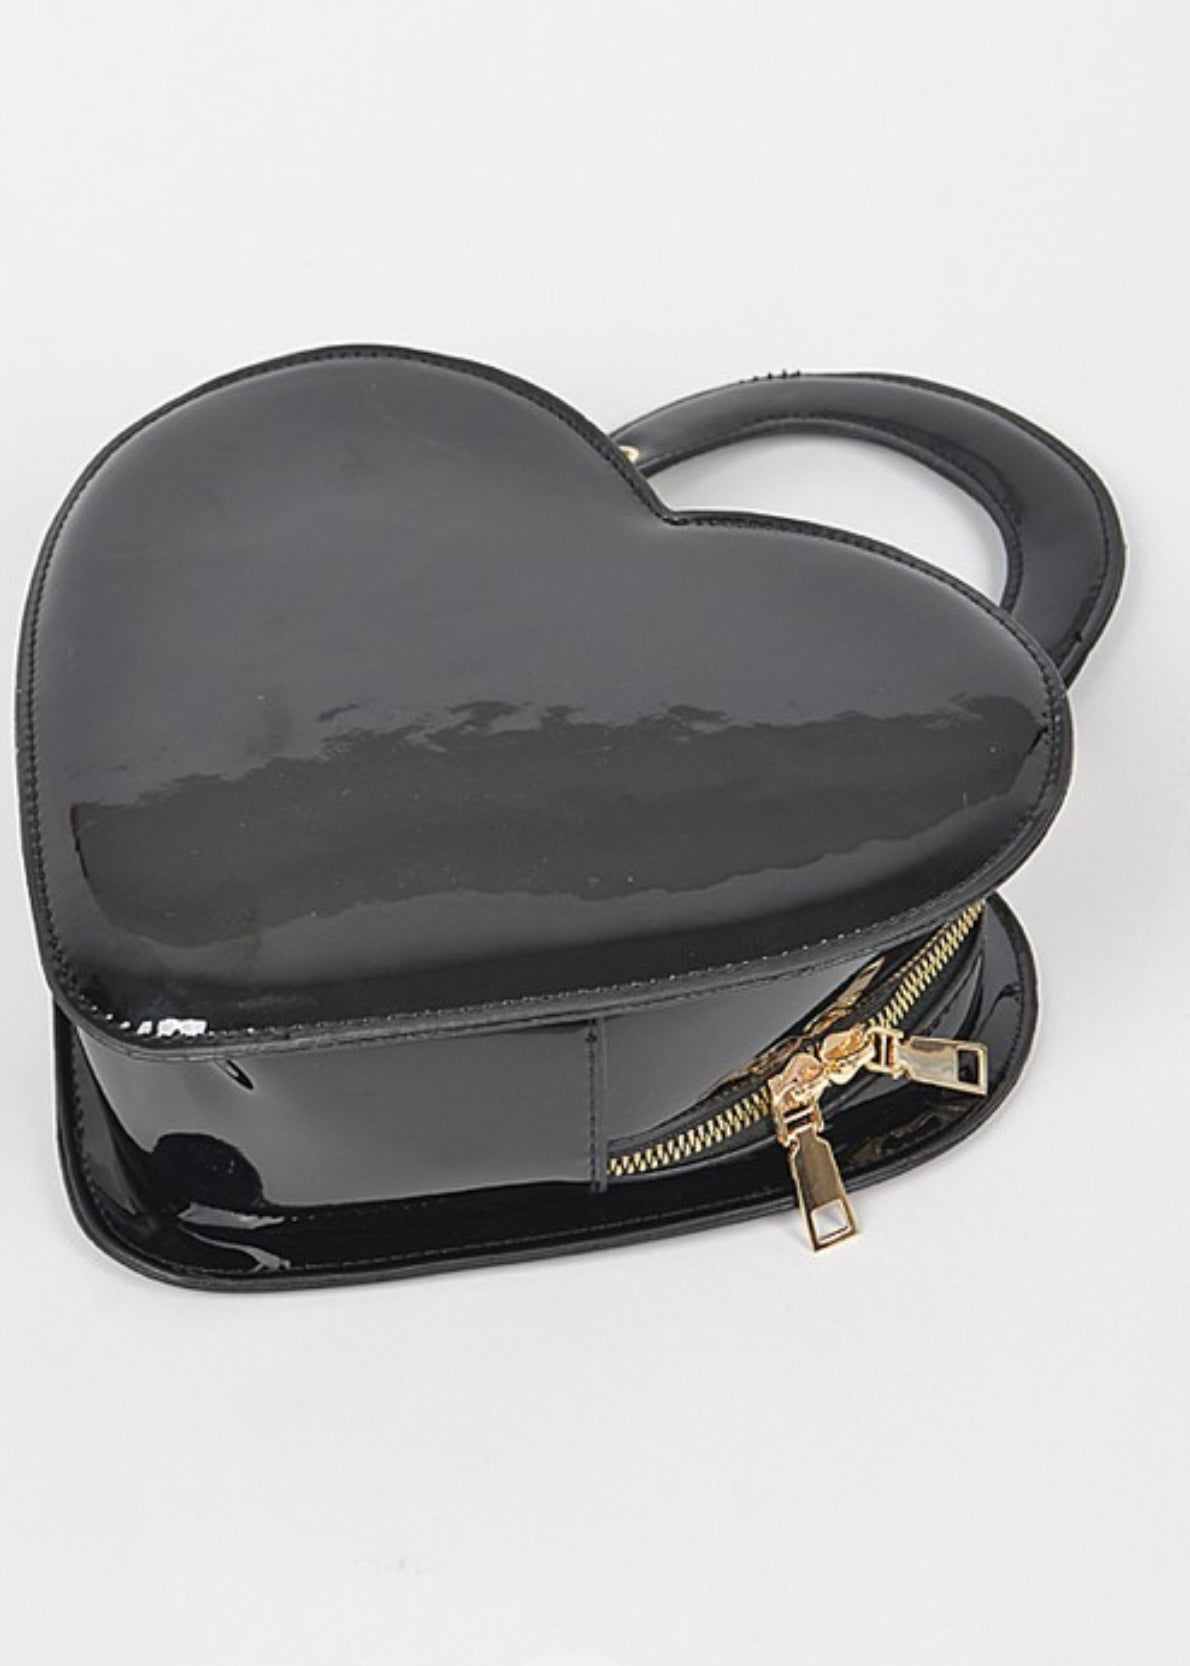 All My Heart : Handbag